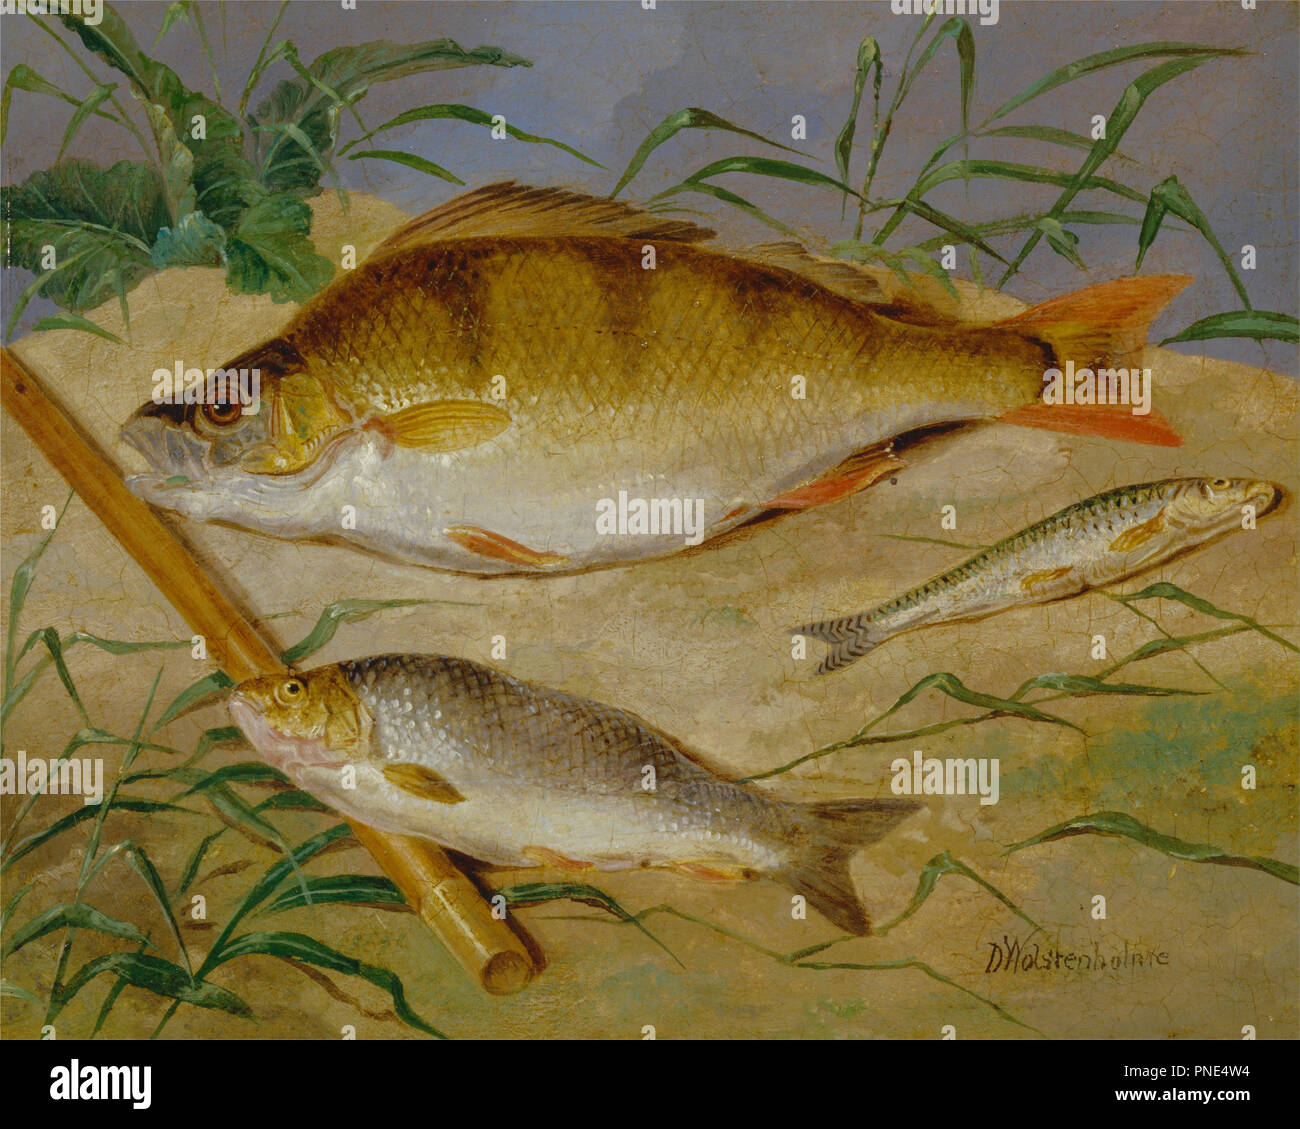 Ein Angler fangen von groben Fisch. Datum/Zeit: Ca. 1850. Malerei. Öl auf Leinwand. Höhe: 203 mm (7,99 in); Breite: 254 mm (10 in.). Autor: Dean Wolstenholme. Stockfoto